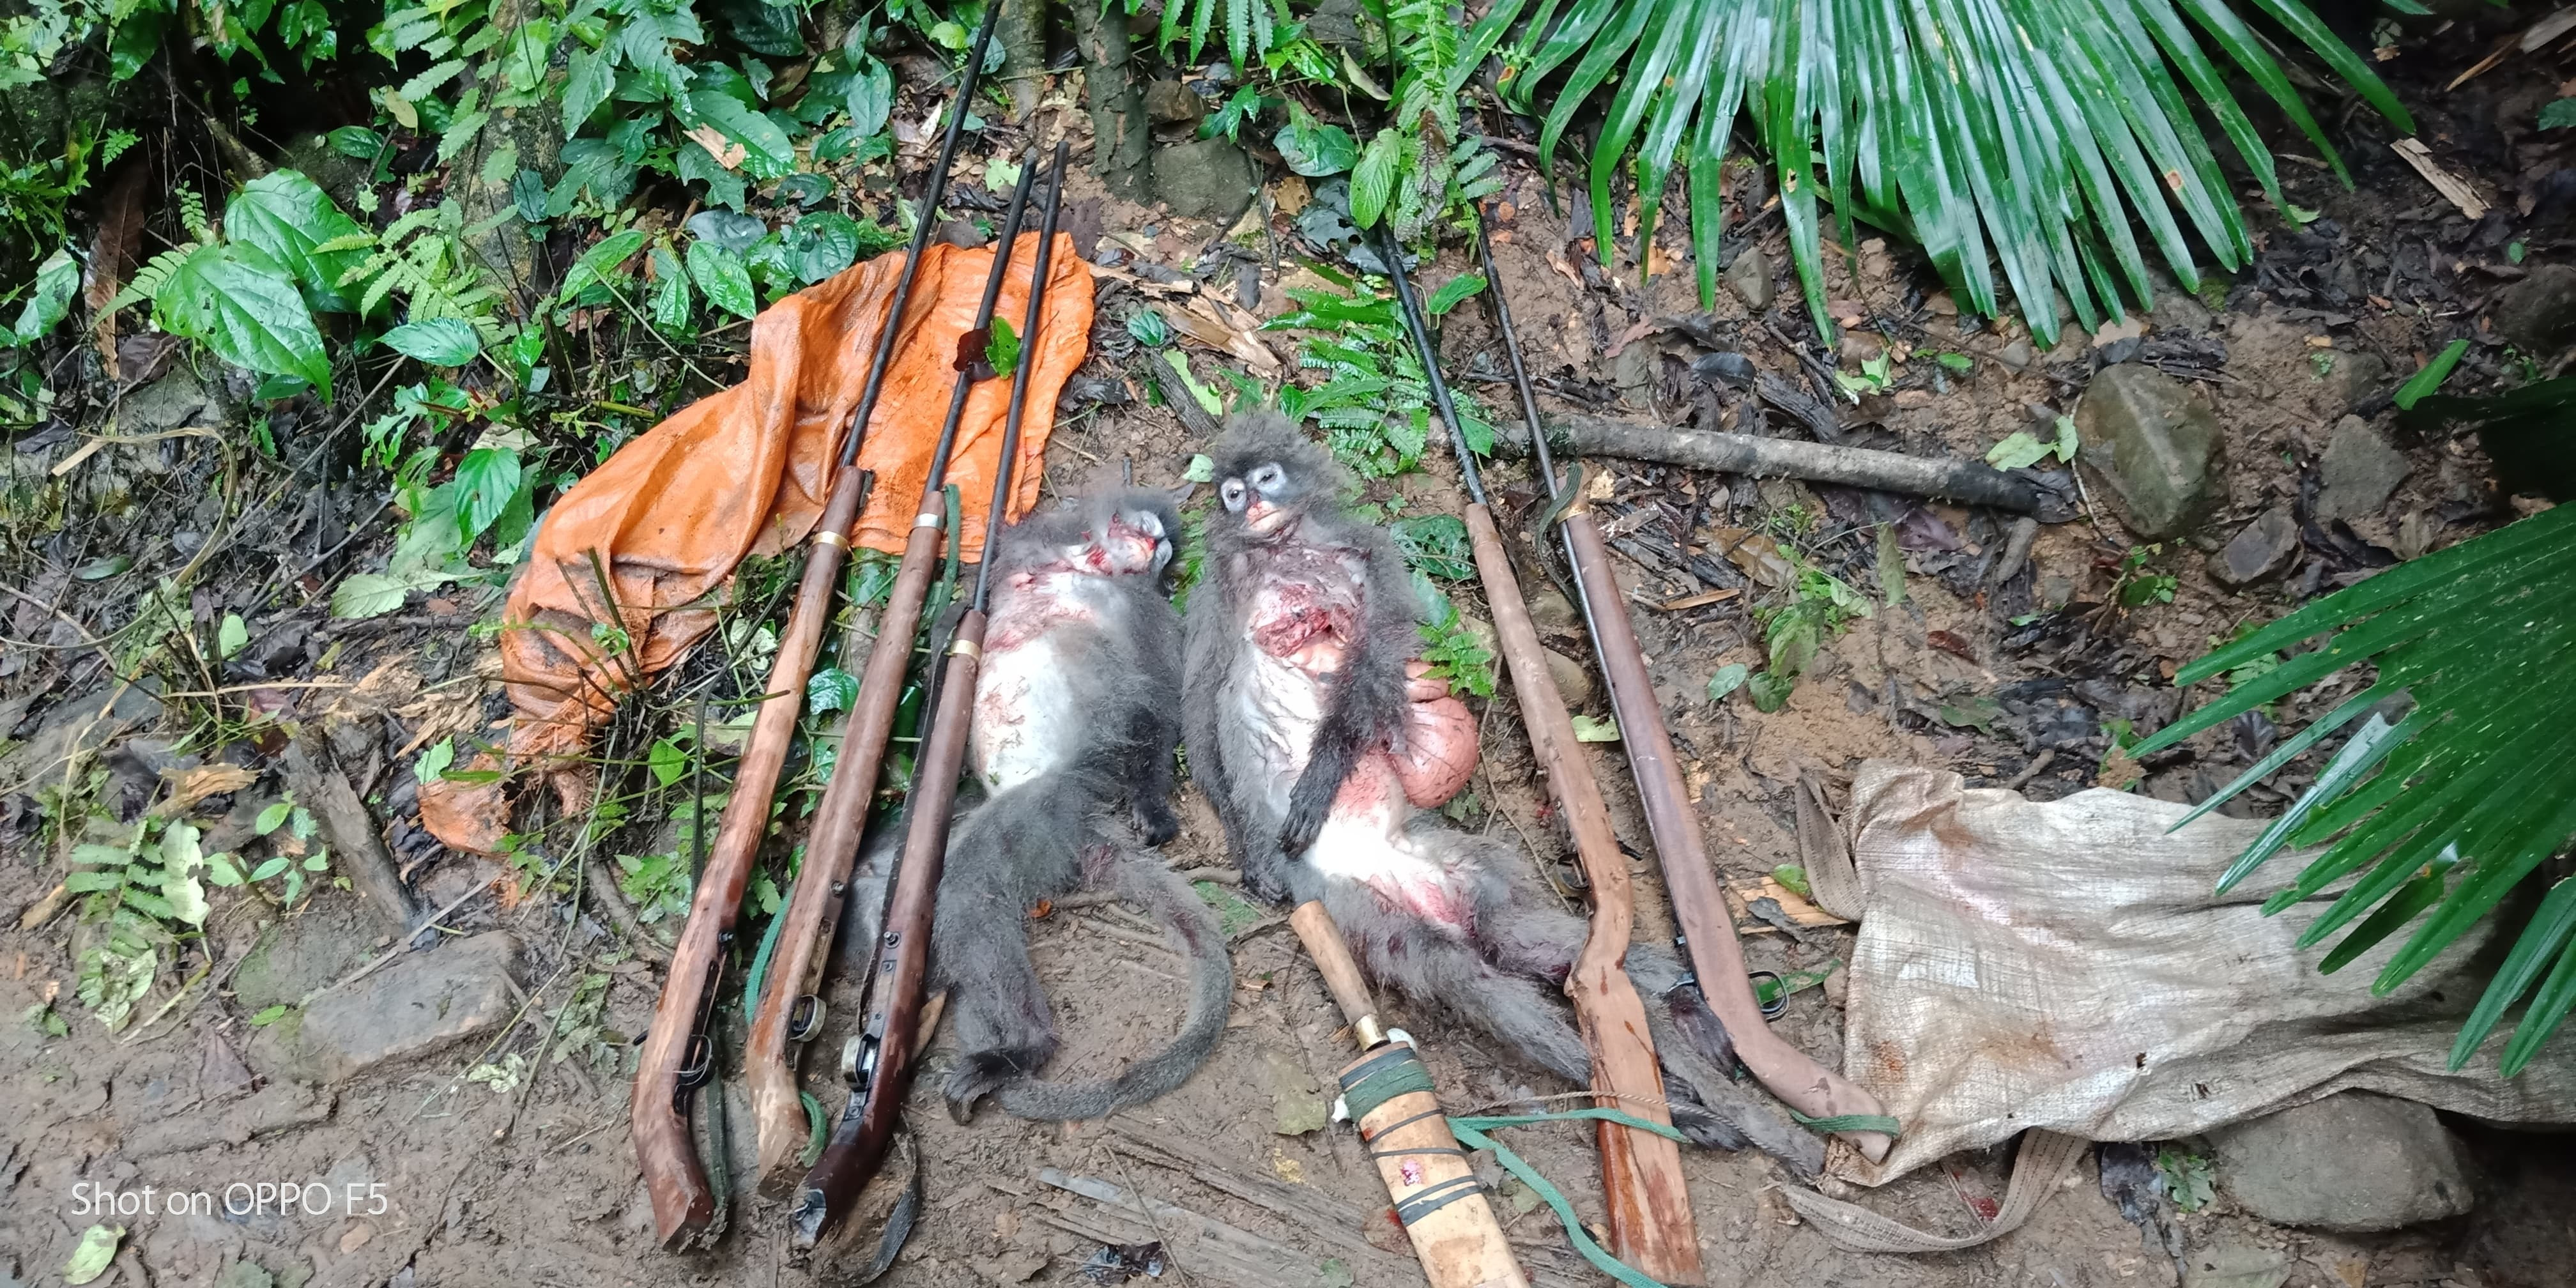 2 cá voọc xám bị nhóm săn động vật trái phép bắn chết (ảnh VQG Pù Mát cung cấp).